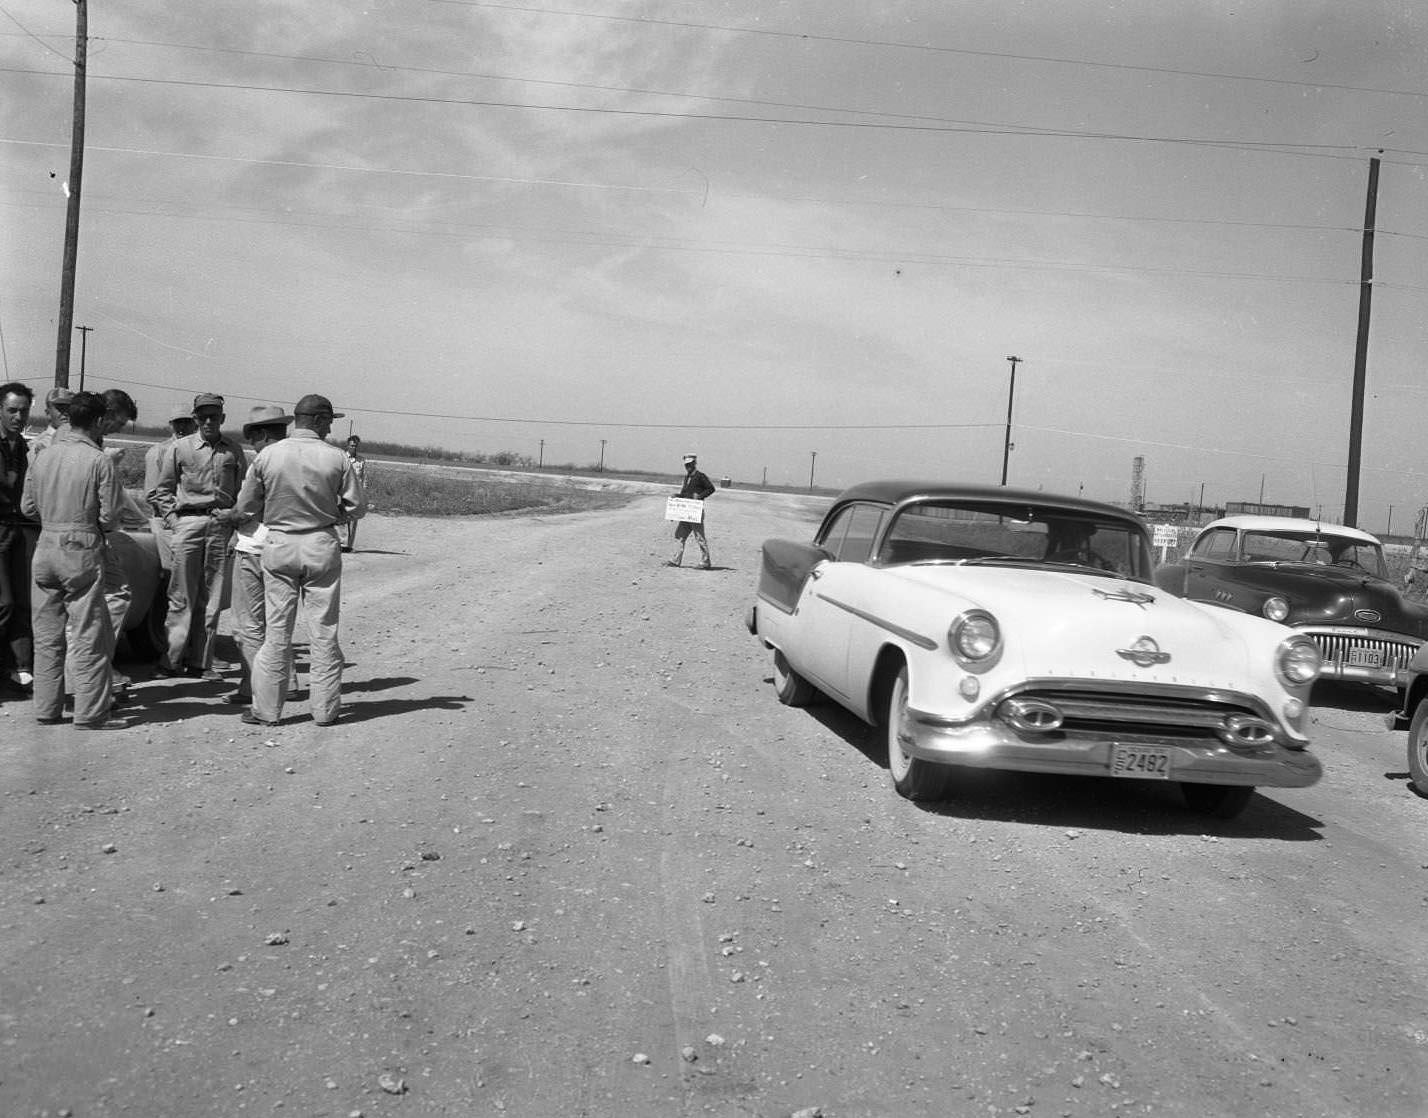 A strike at an air base in Abilene, Texas, 1958